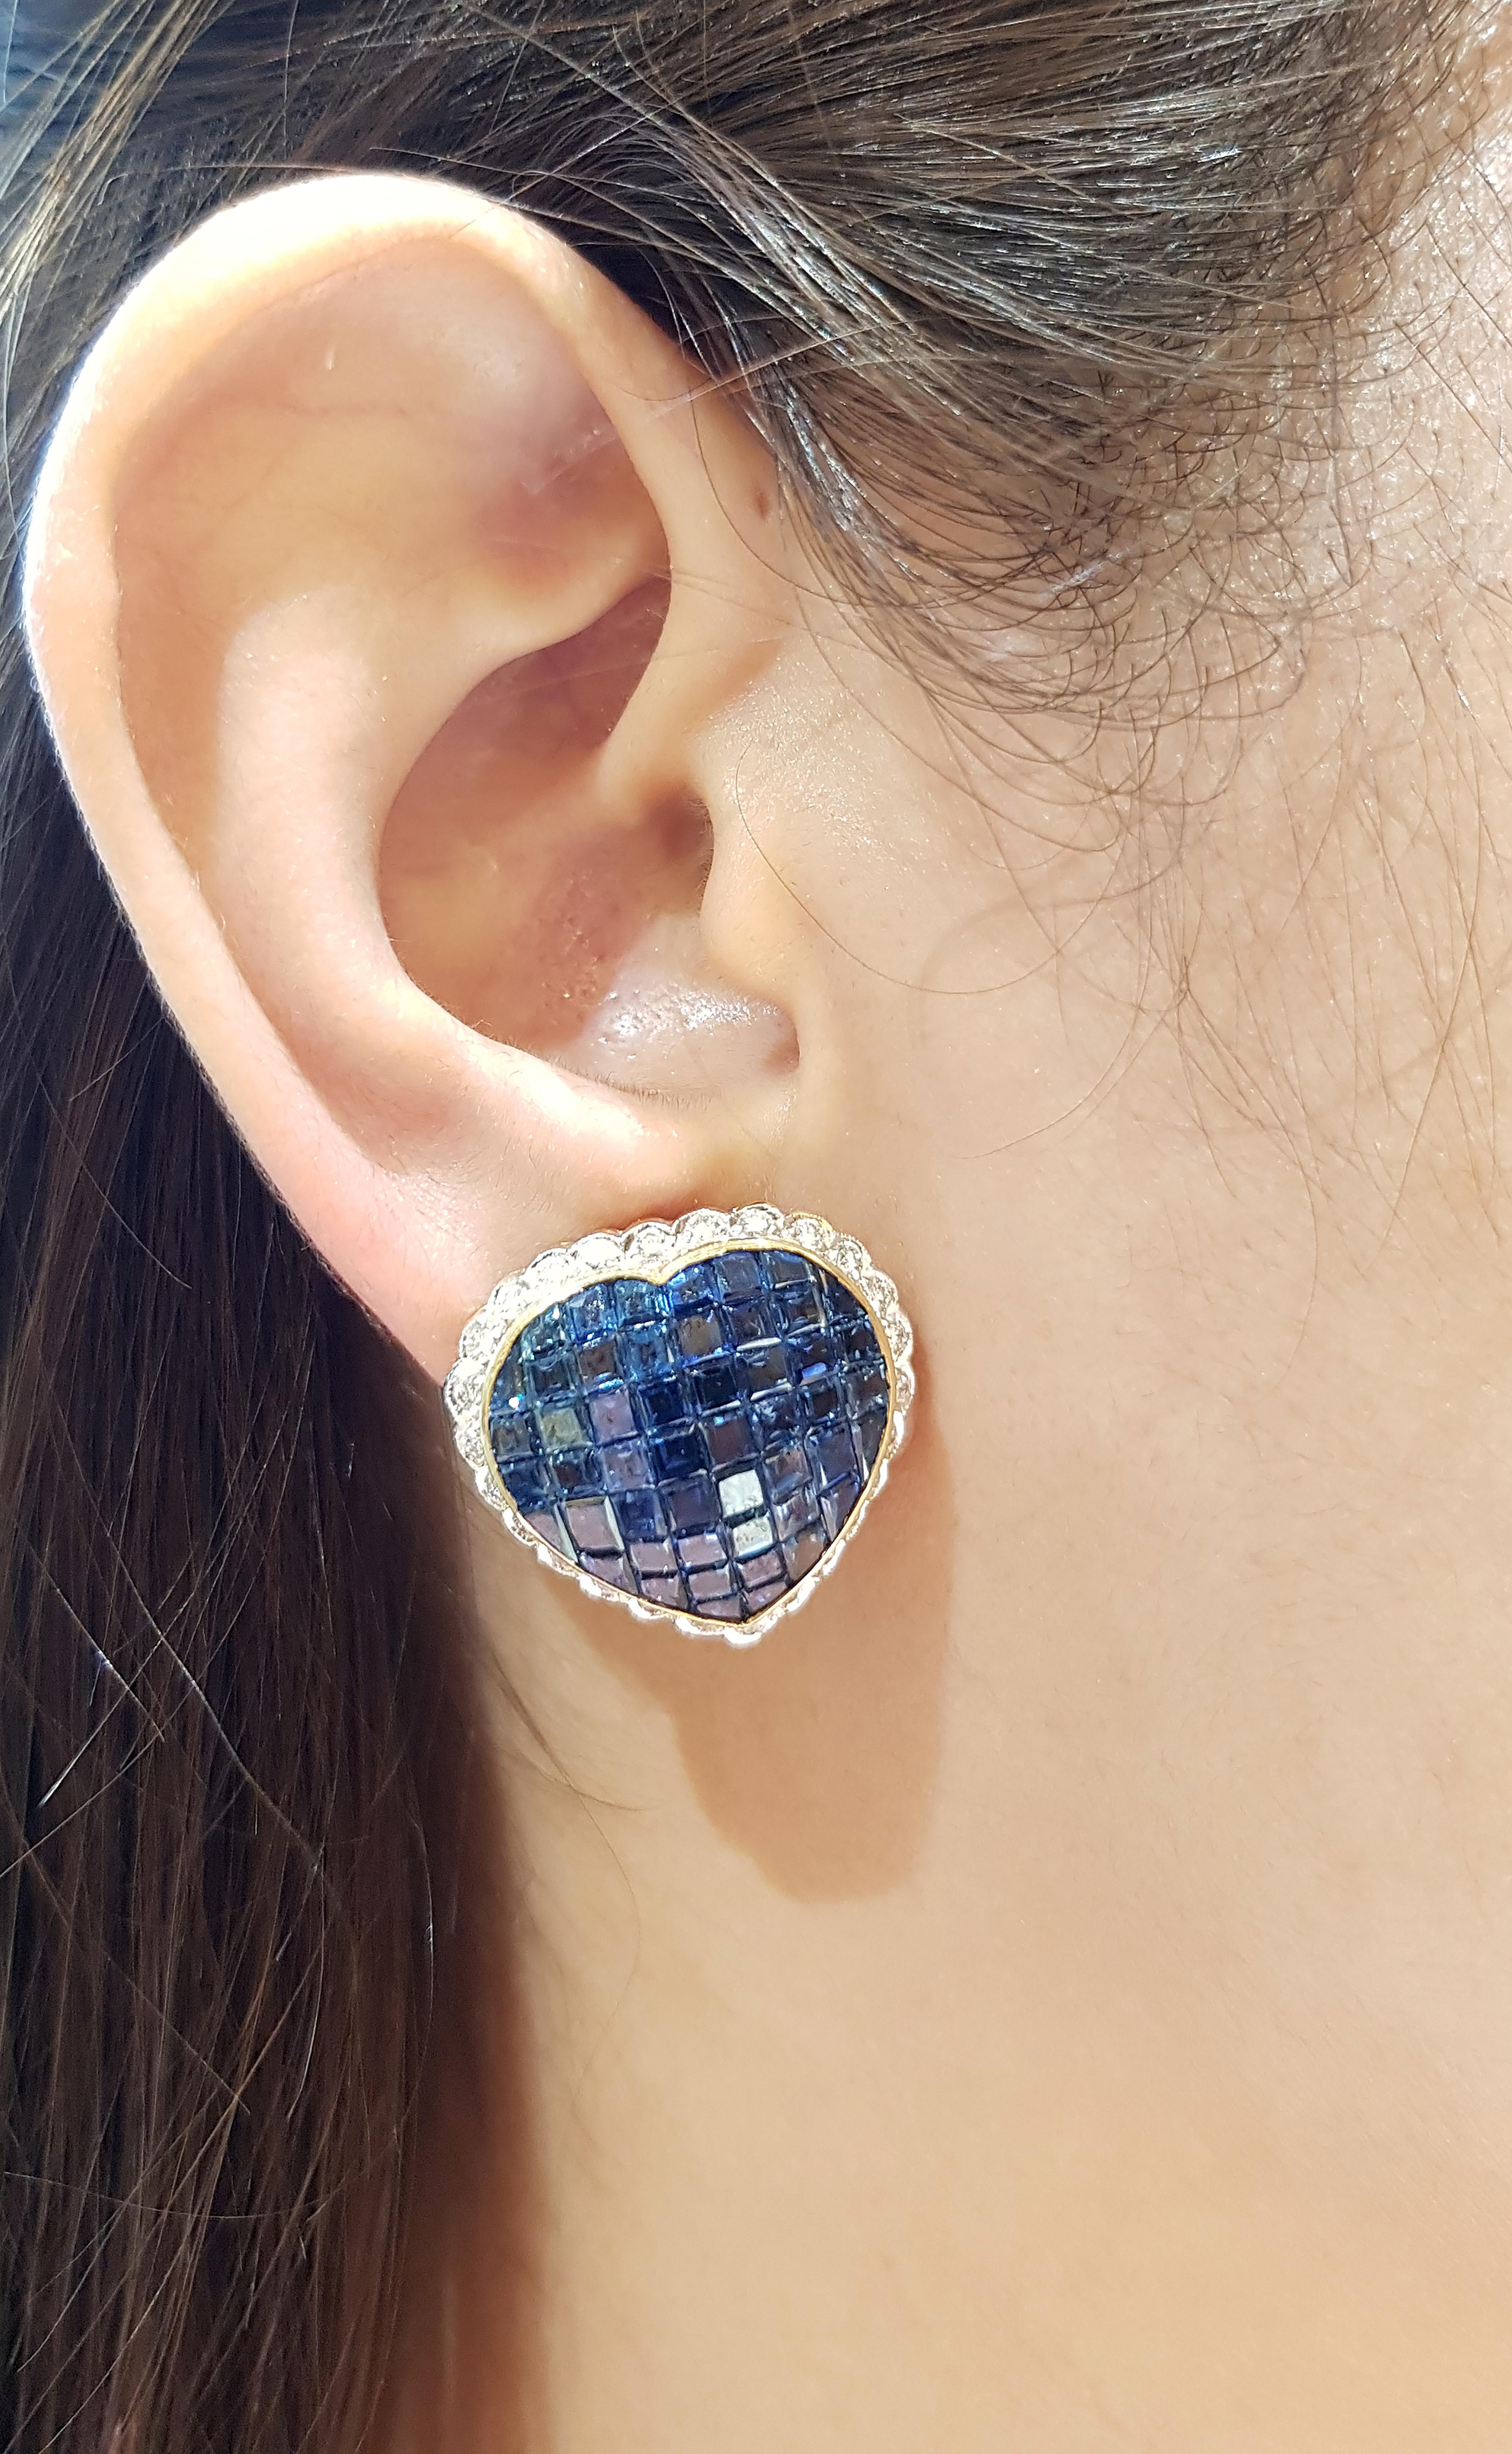 Blauer Saphir 23,64 Karat mit Diamant 0,75 Karat Ohrringe in 18 Karat Goldfassung

Breite:  2.2 cm 
Länge: 2.0 cm
Gesamtgewicht: 15,22 Gramm

